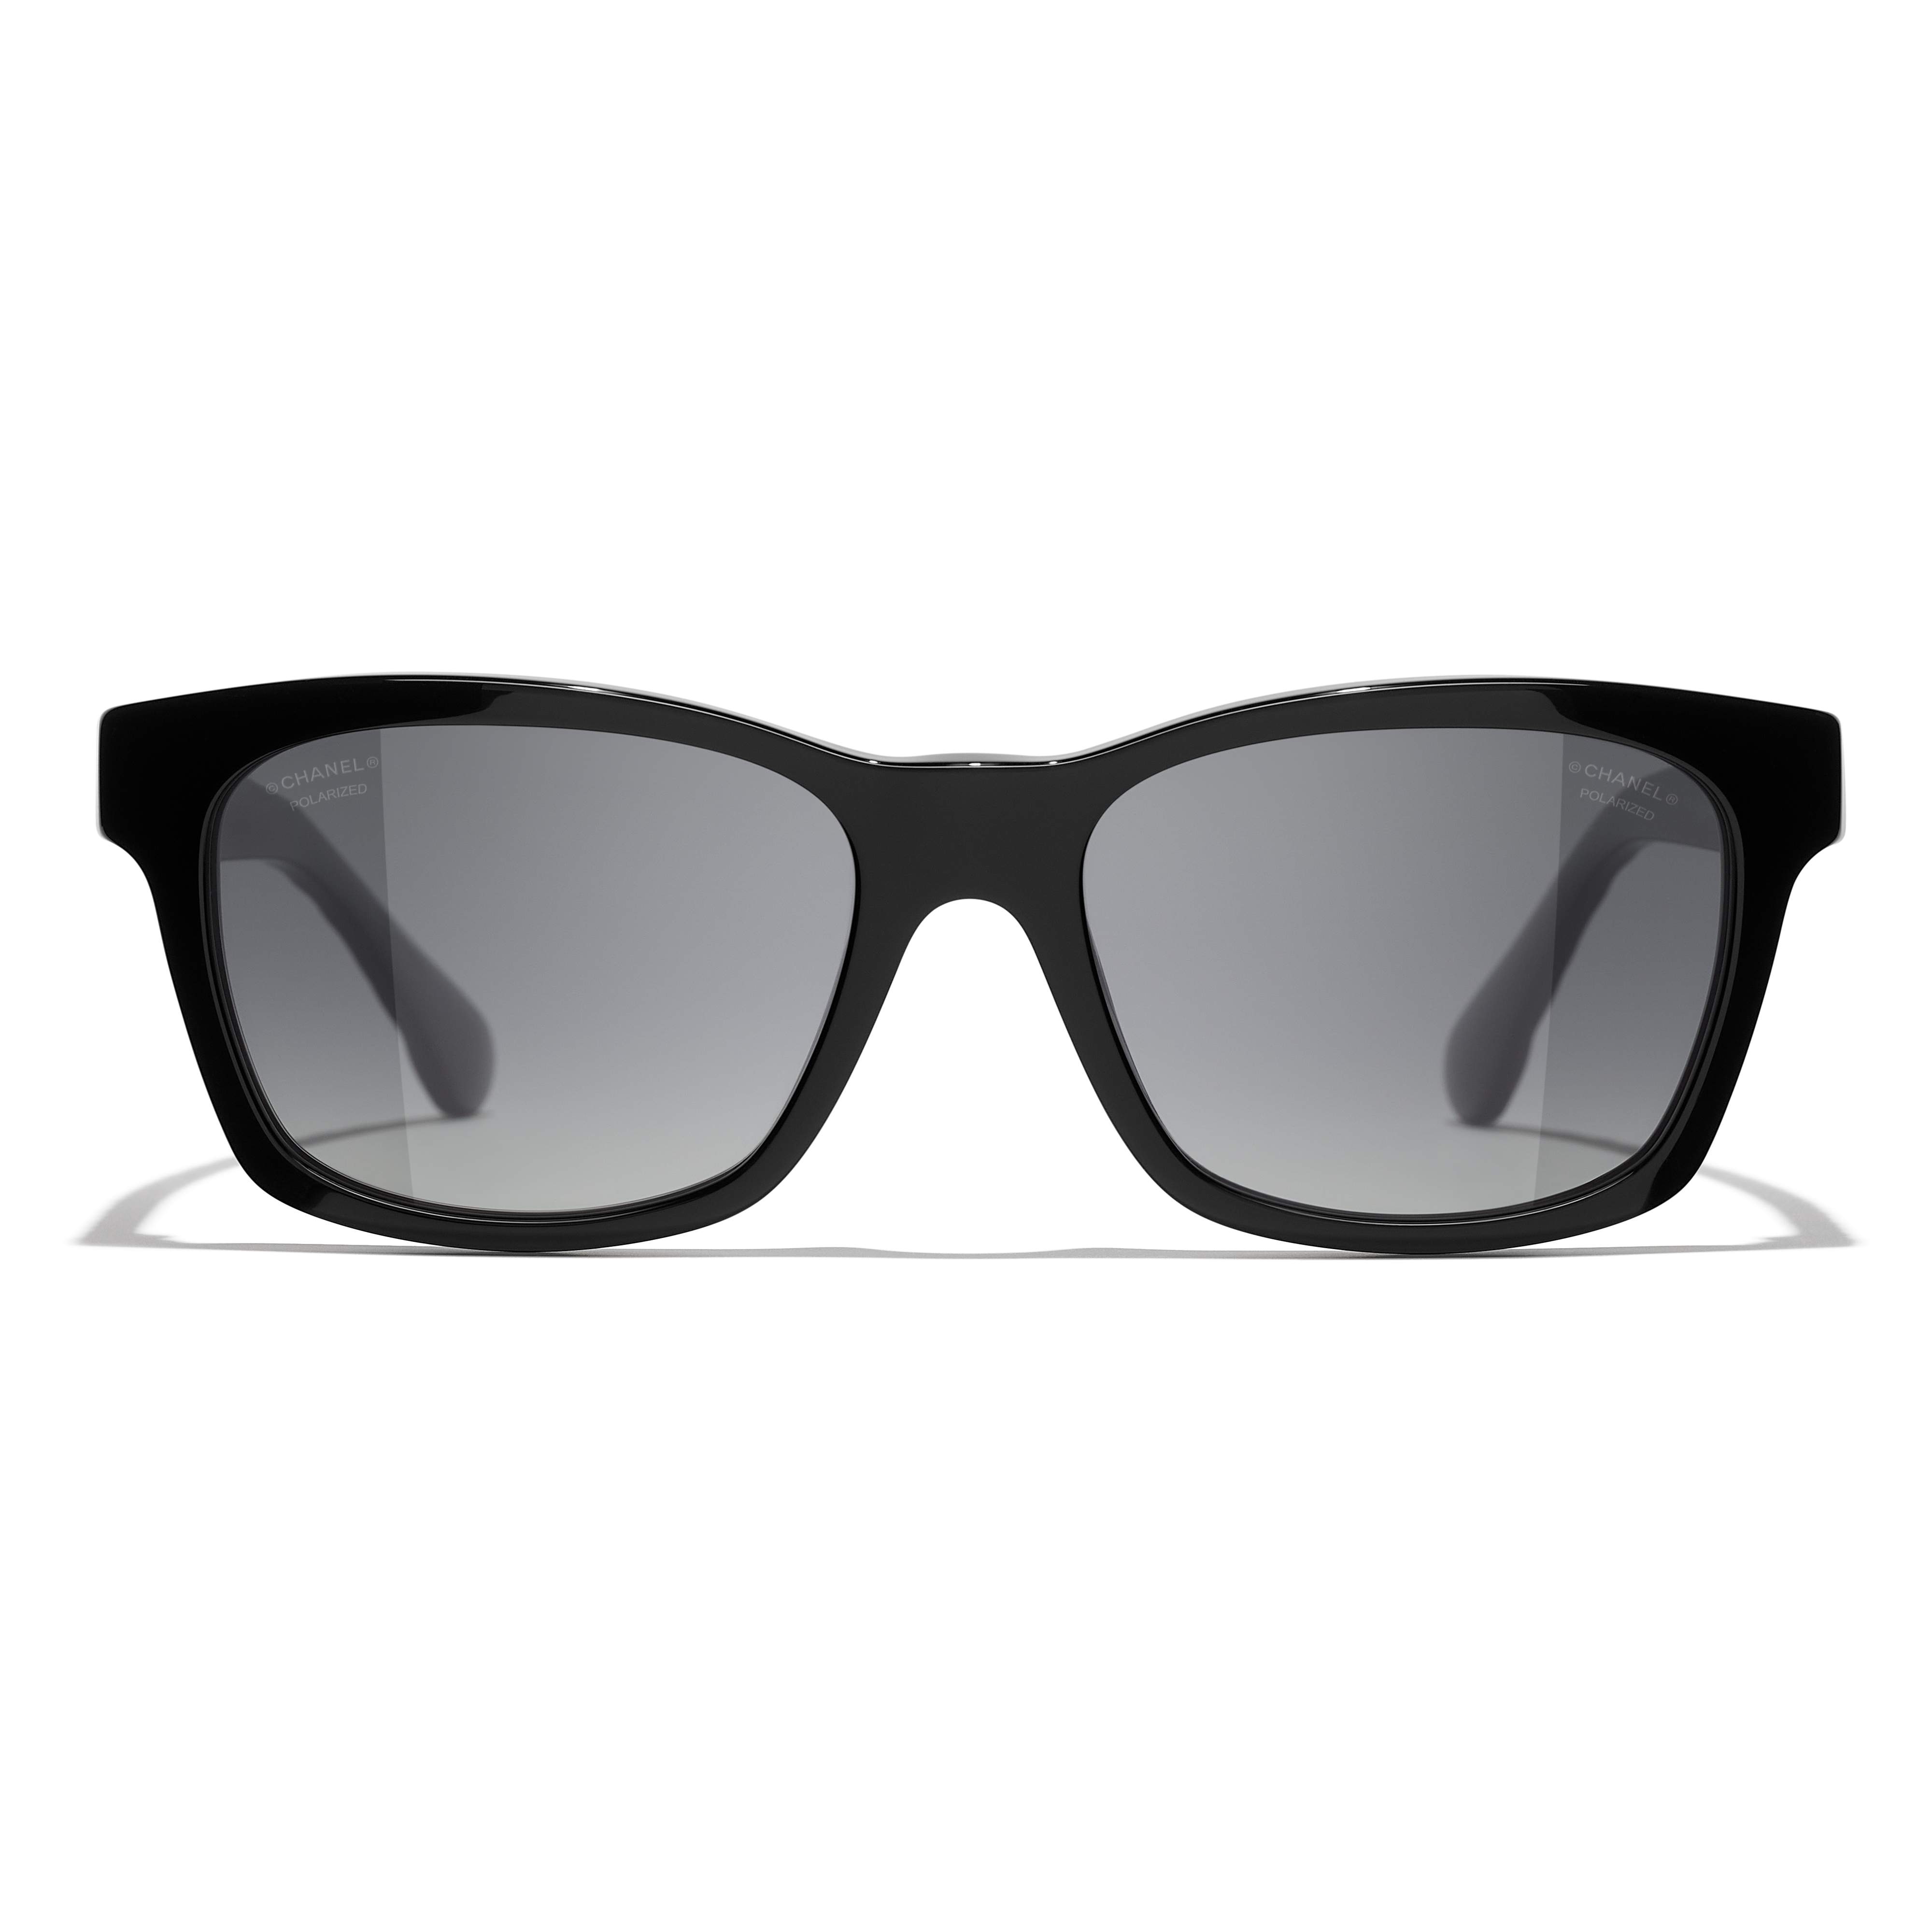 Sunglasses CHANEL CH5484 C760/S8 54-17 Black in stock